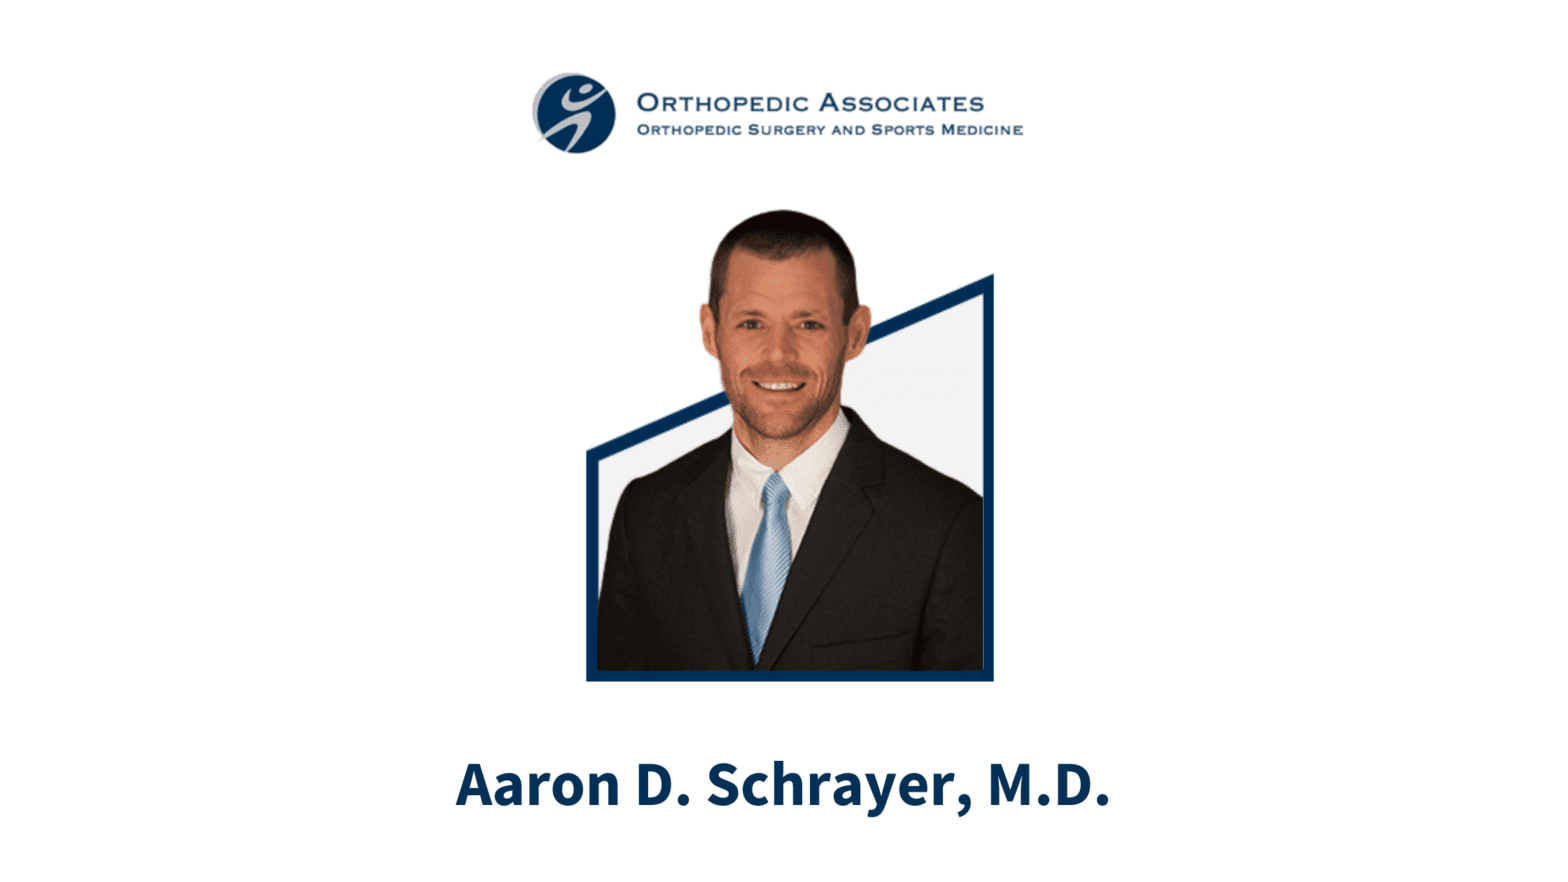 Orthopedic Surgeon Spotlight: Aaron D. Schrayer, M.D.